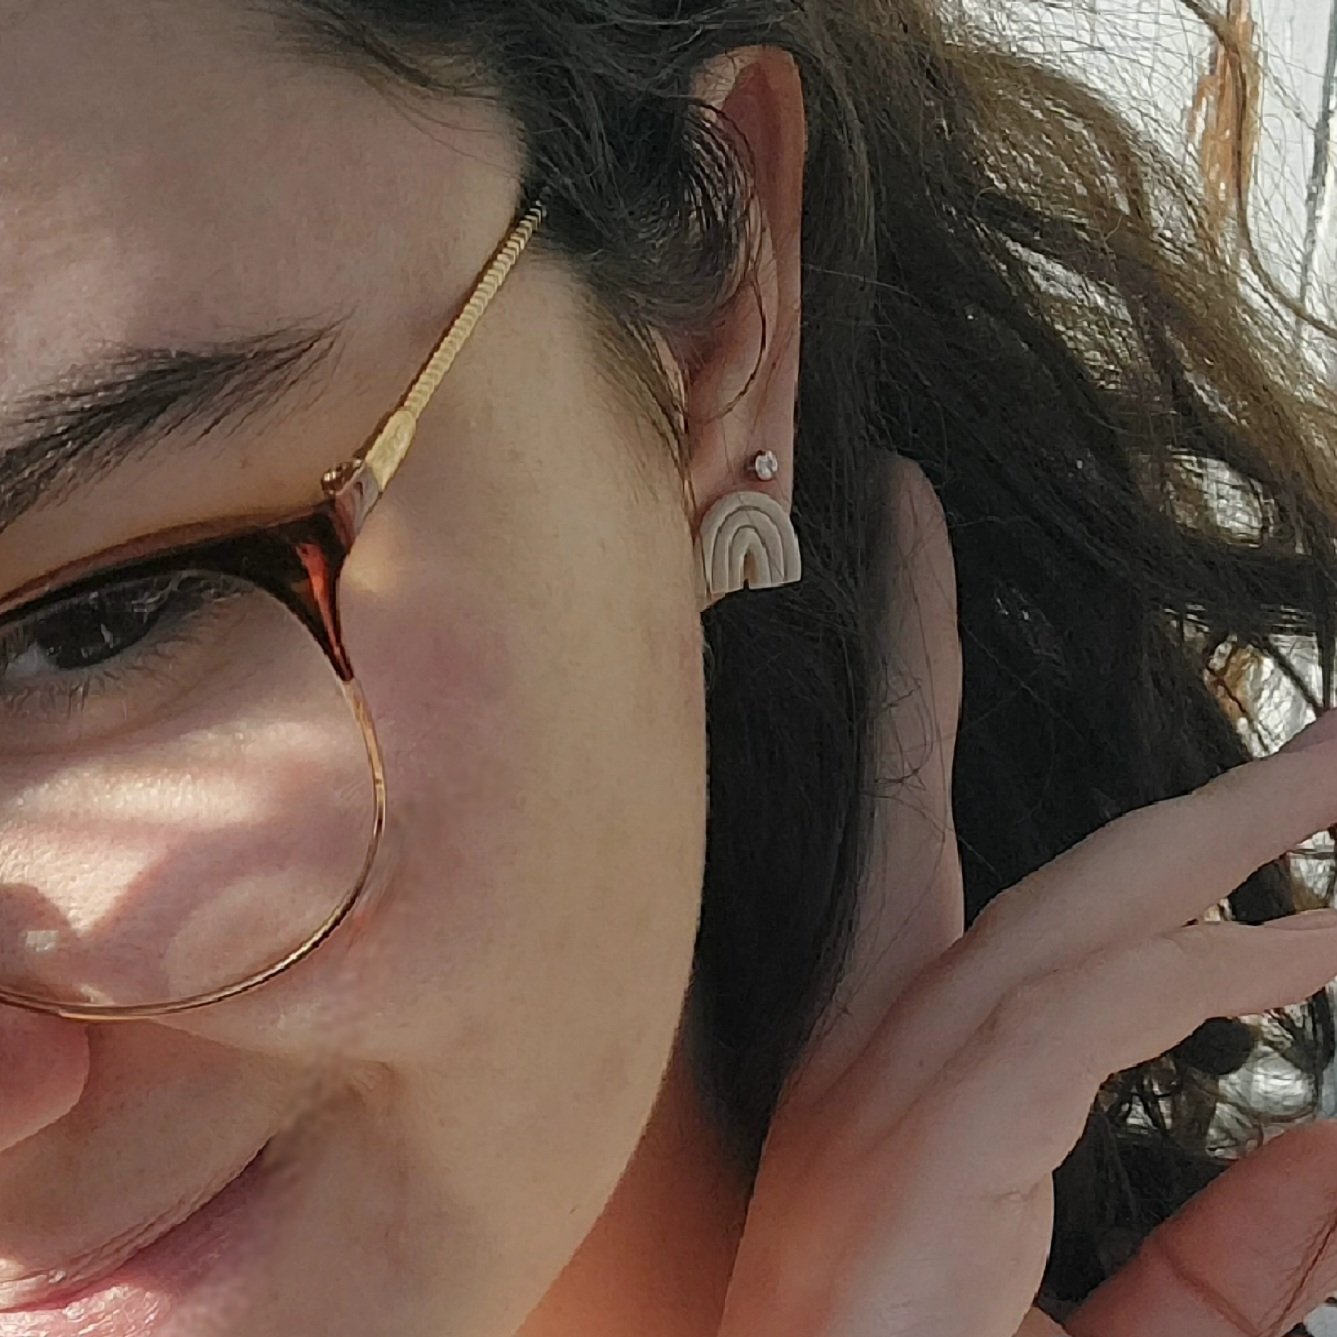 Boucles d'oreilles puces - Iris Sahara